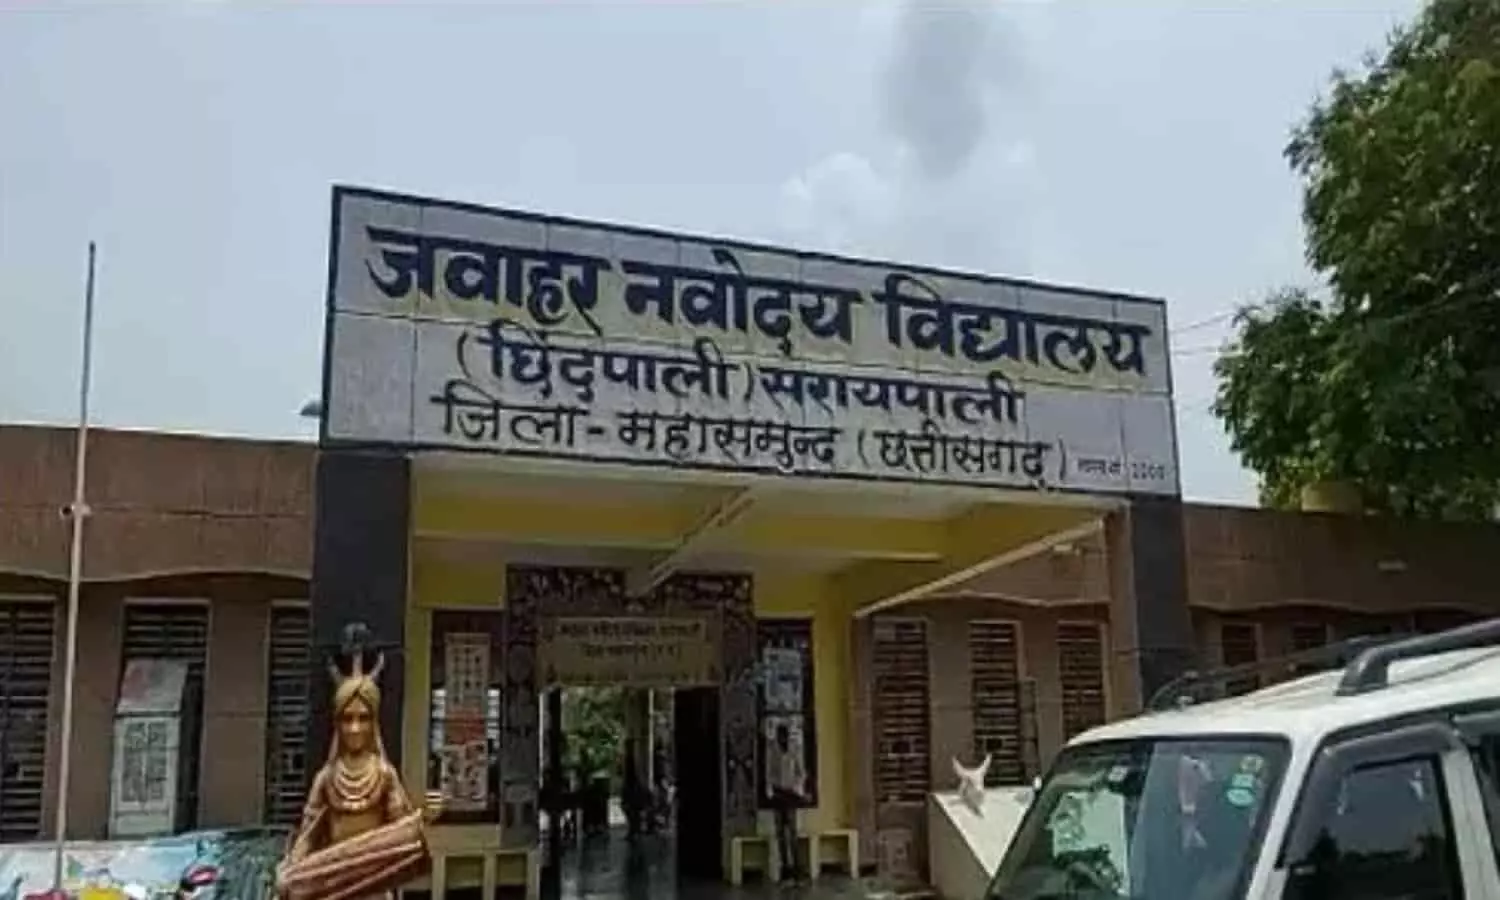 Chhattisgarh Corona News: छत्तीसगढ़ के जवाहर नवोदय विद्यालय में कोरोना विस्फोट,  56 बच्चे मिले संक्रमित, स्कूल बंद करने के निर्देश